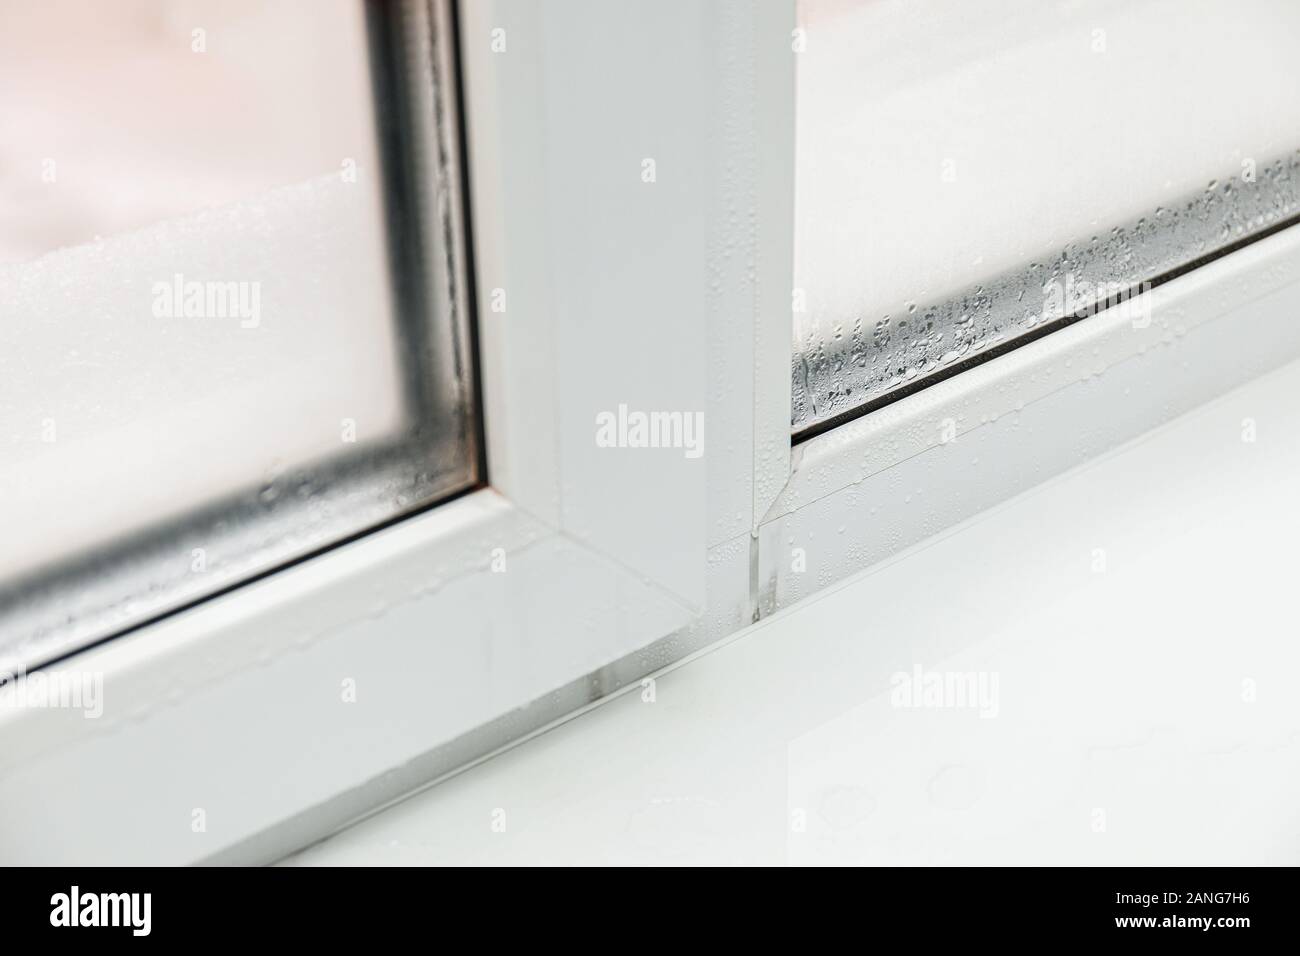 Kunststoff Fenster mit Feuchtigkeit und Kondenswasser auf Glas. Schlechte  Belüftung im Haus während der kalten Jahreszeit Stockfotografie - Alamy